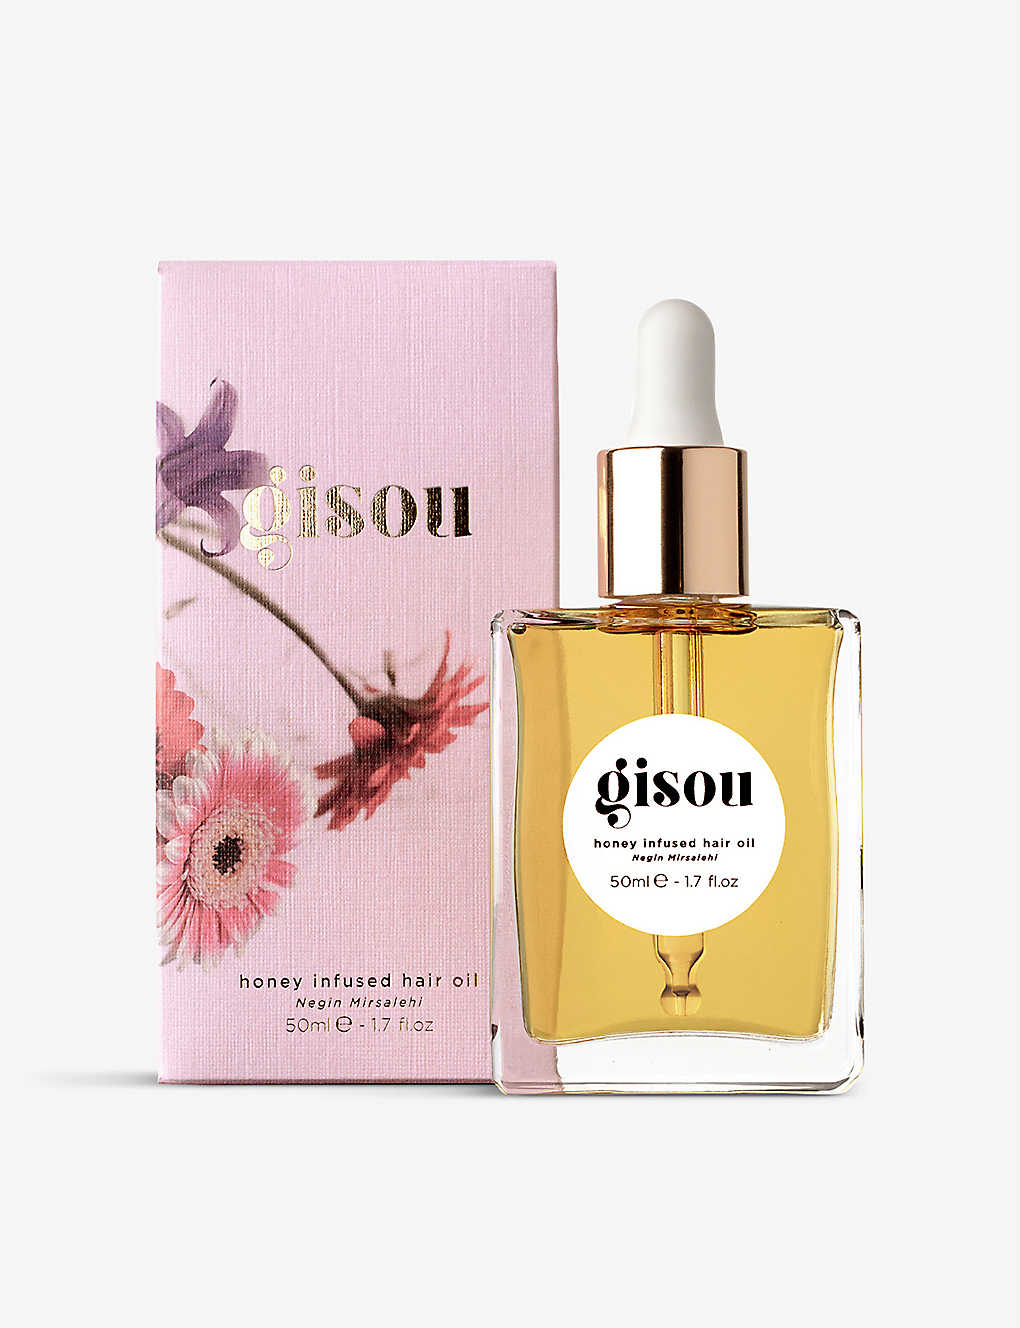 GISOU Honey Infused hair oil 50ml